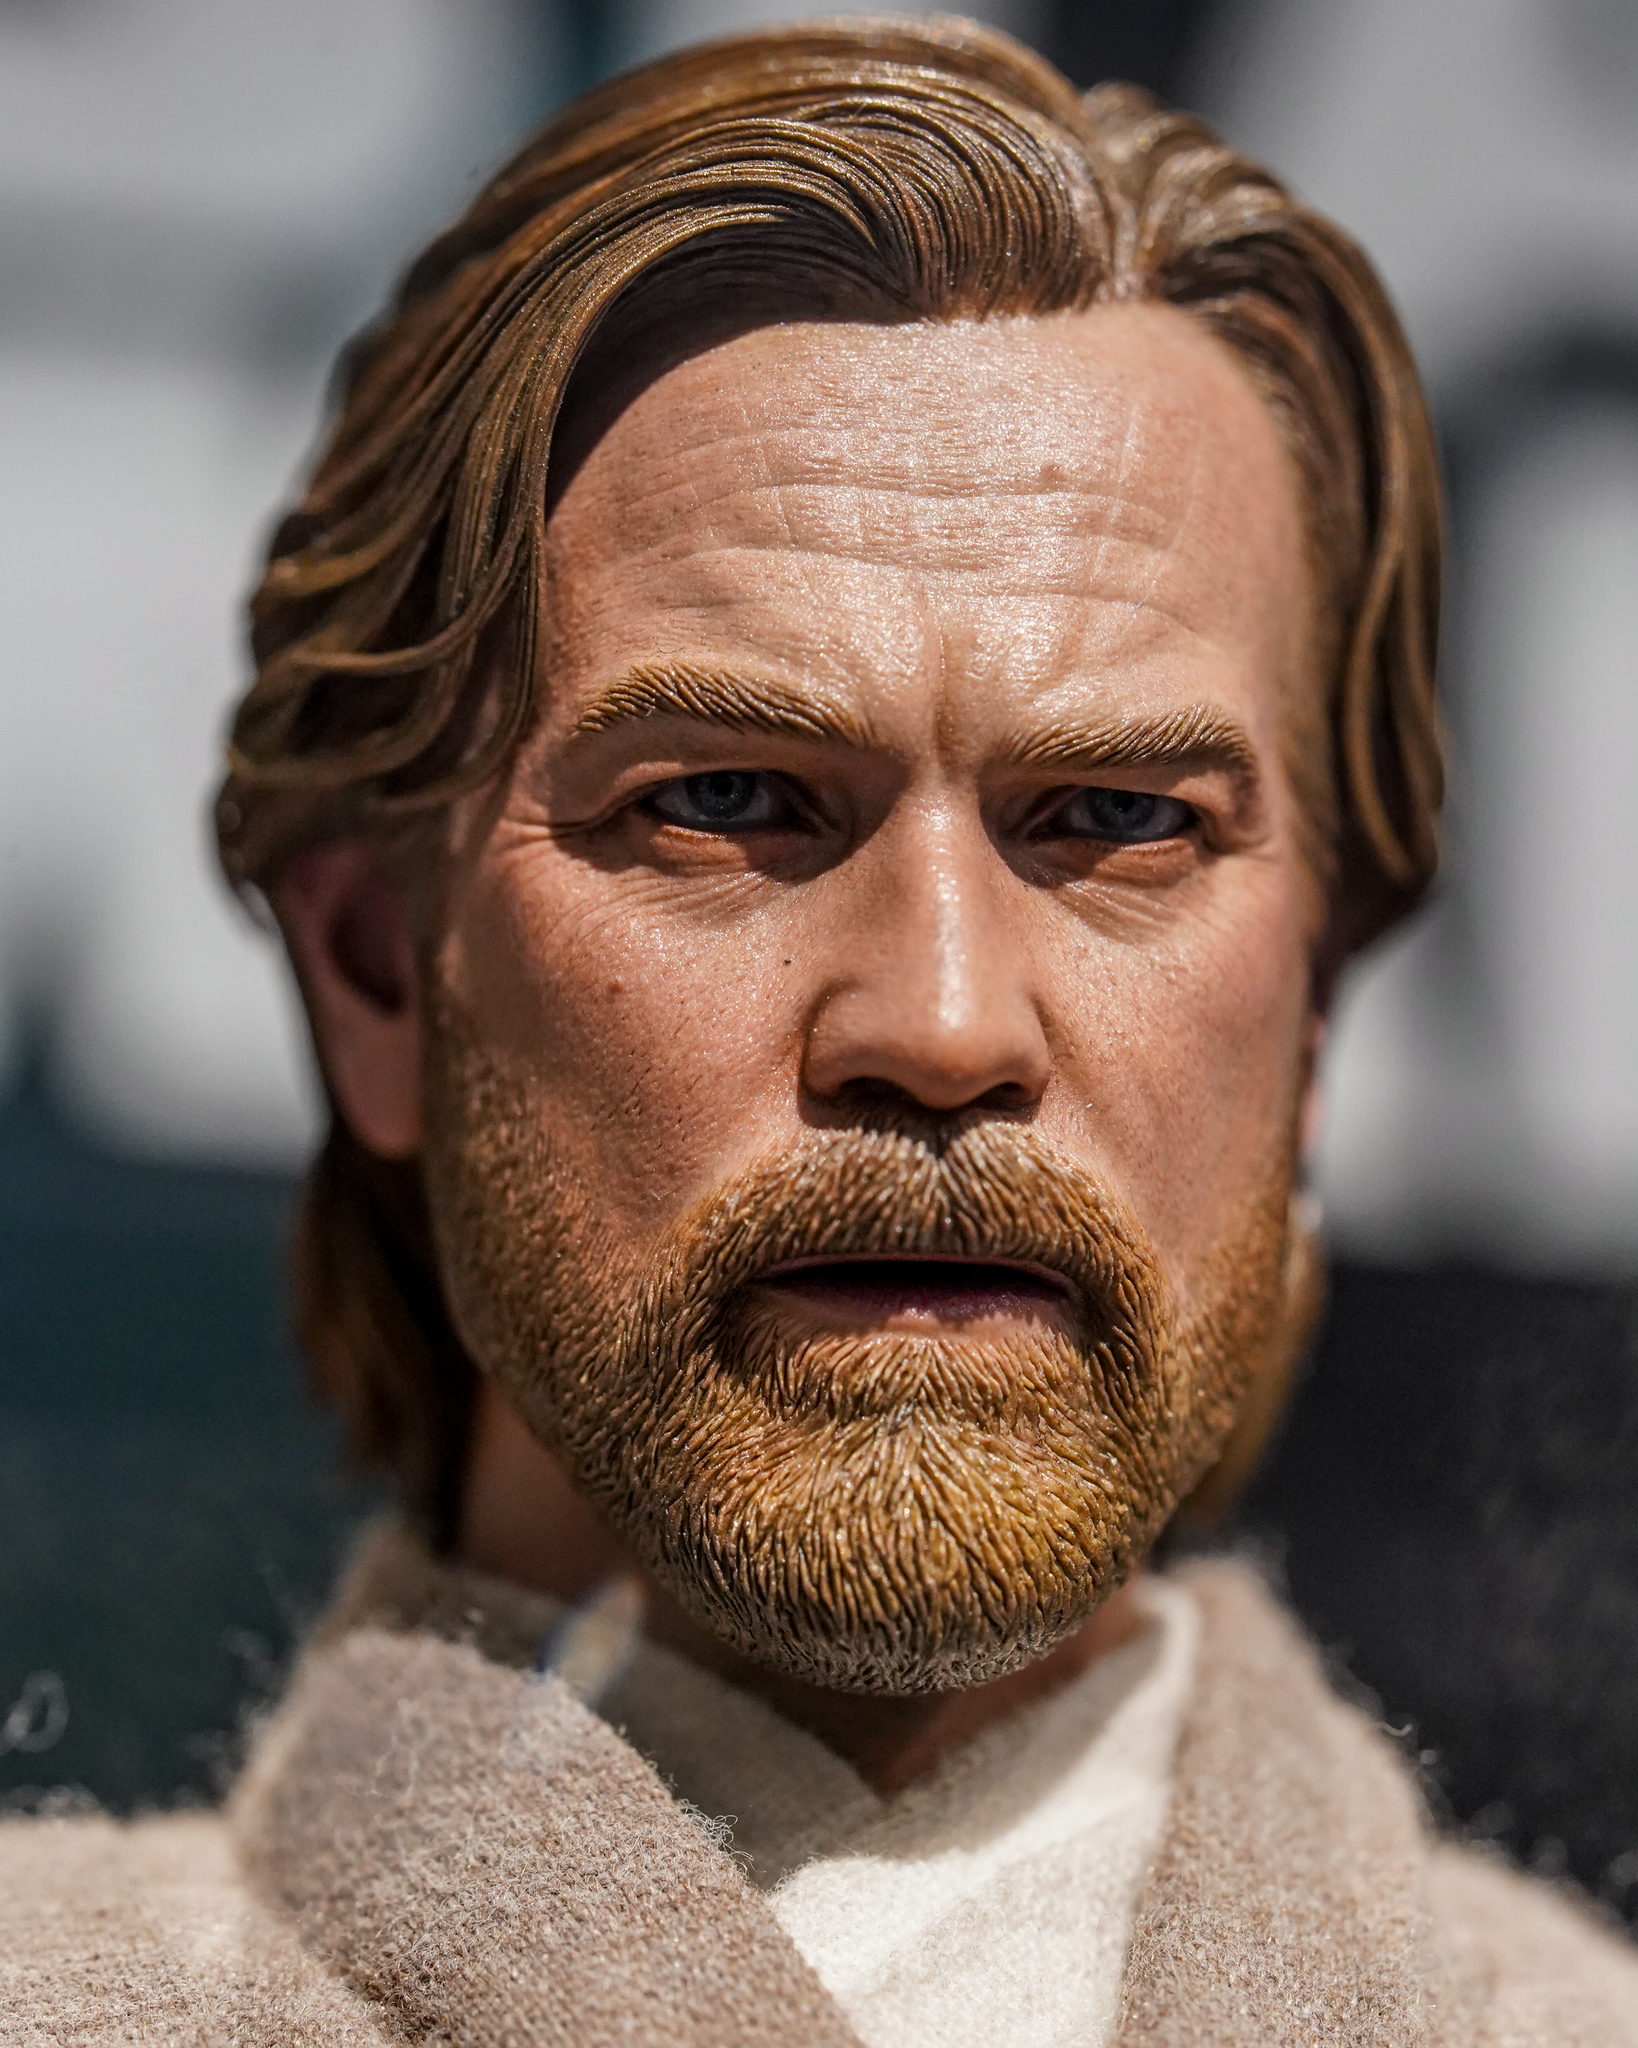 Obi-Wan Kenobi: Star Wars: Obi-Wan Kenobi: DX26